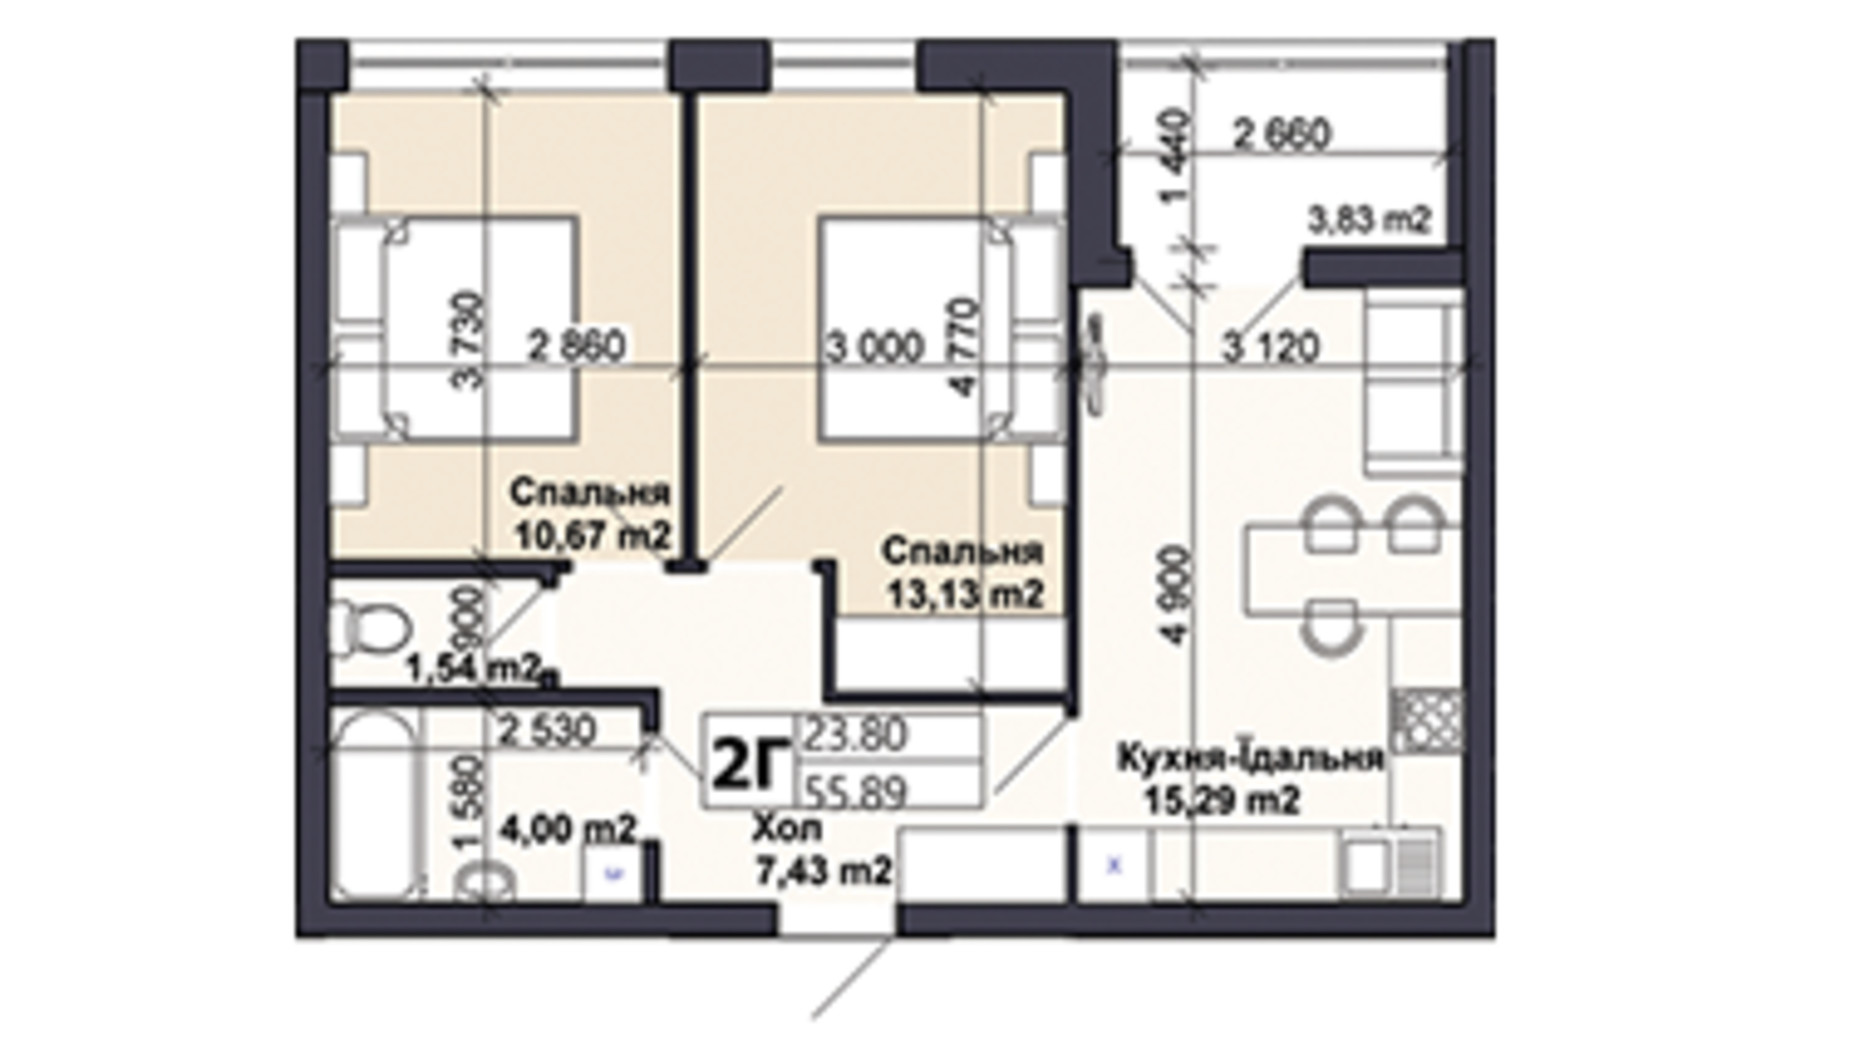 Планировка 2-комнатной квартиры в ЖК Саме той 55.89 м², фото 585429